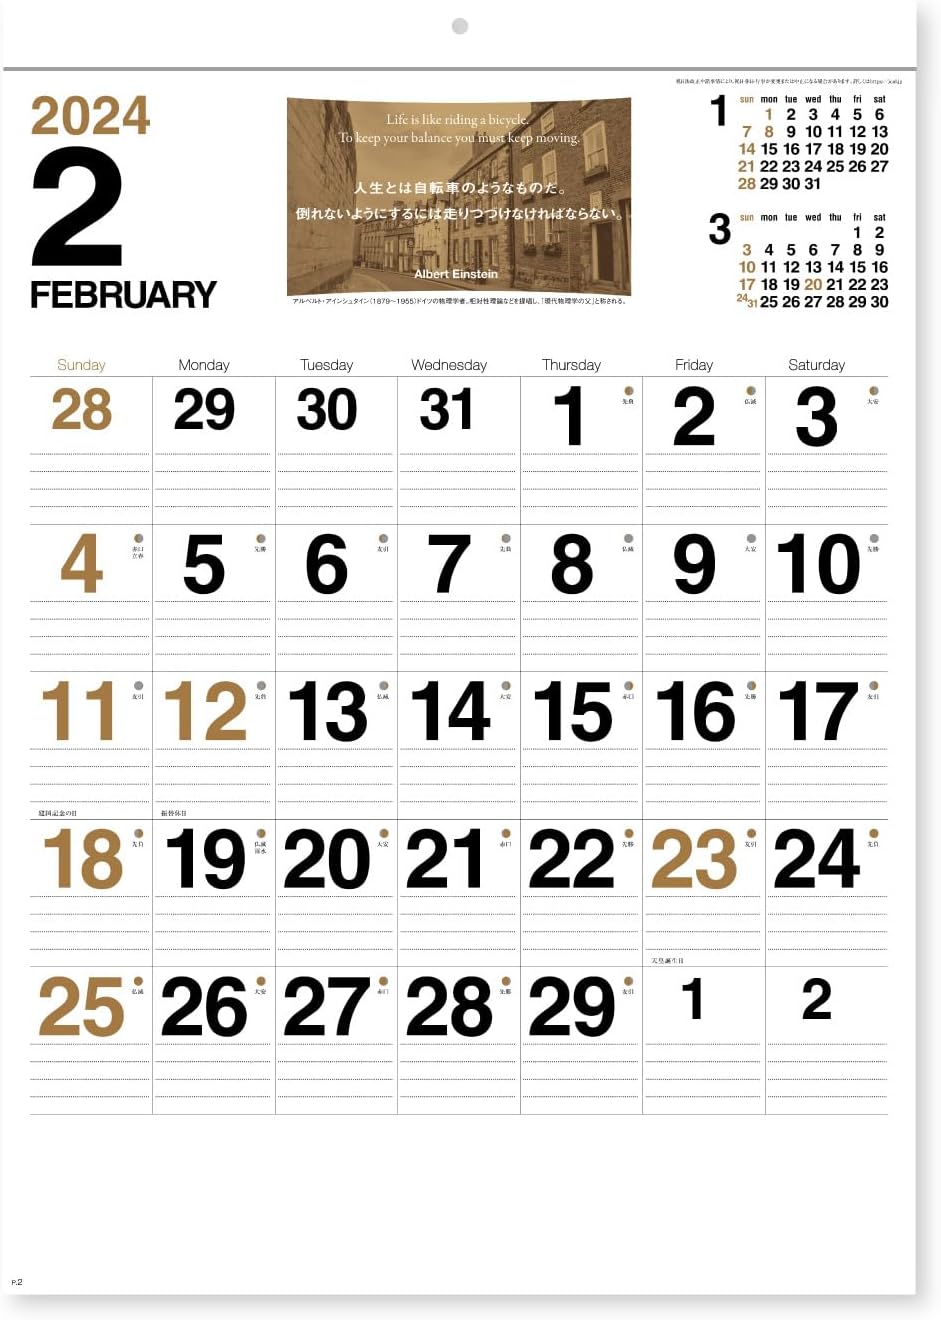 New Japan Calendar 2024 Wall Calendar KODOU NK468